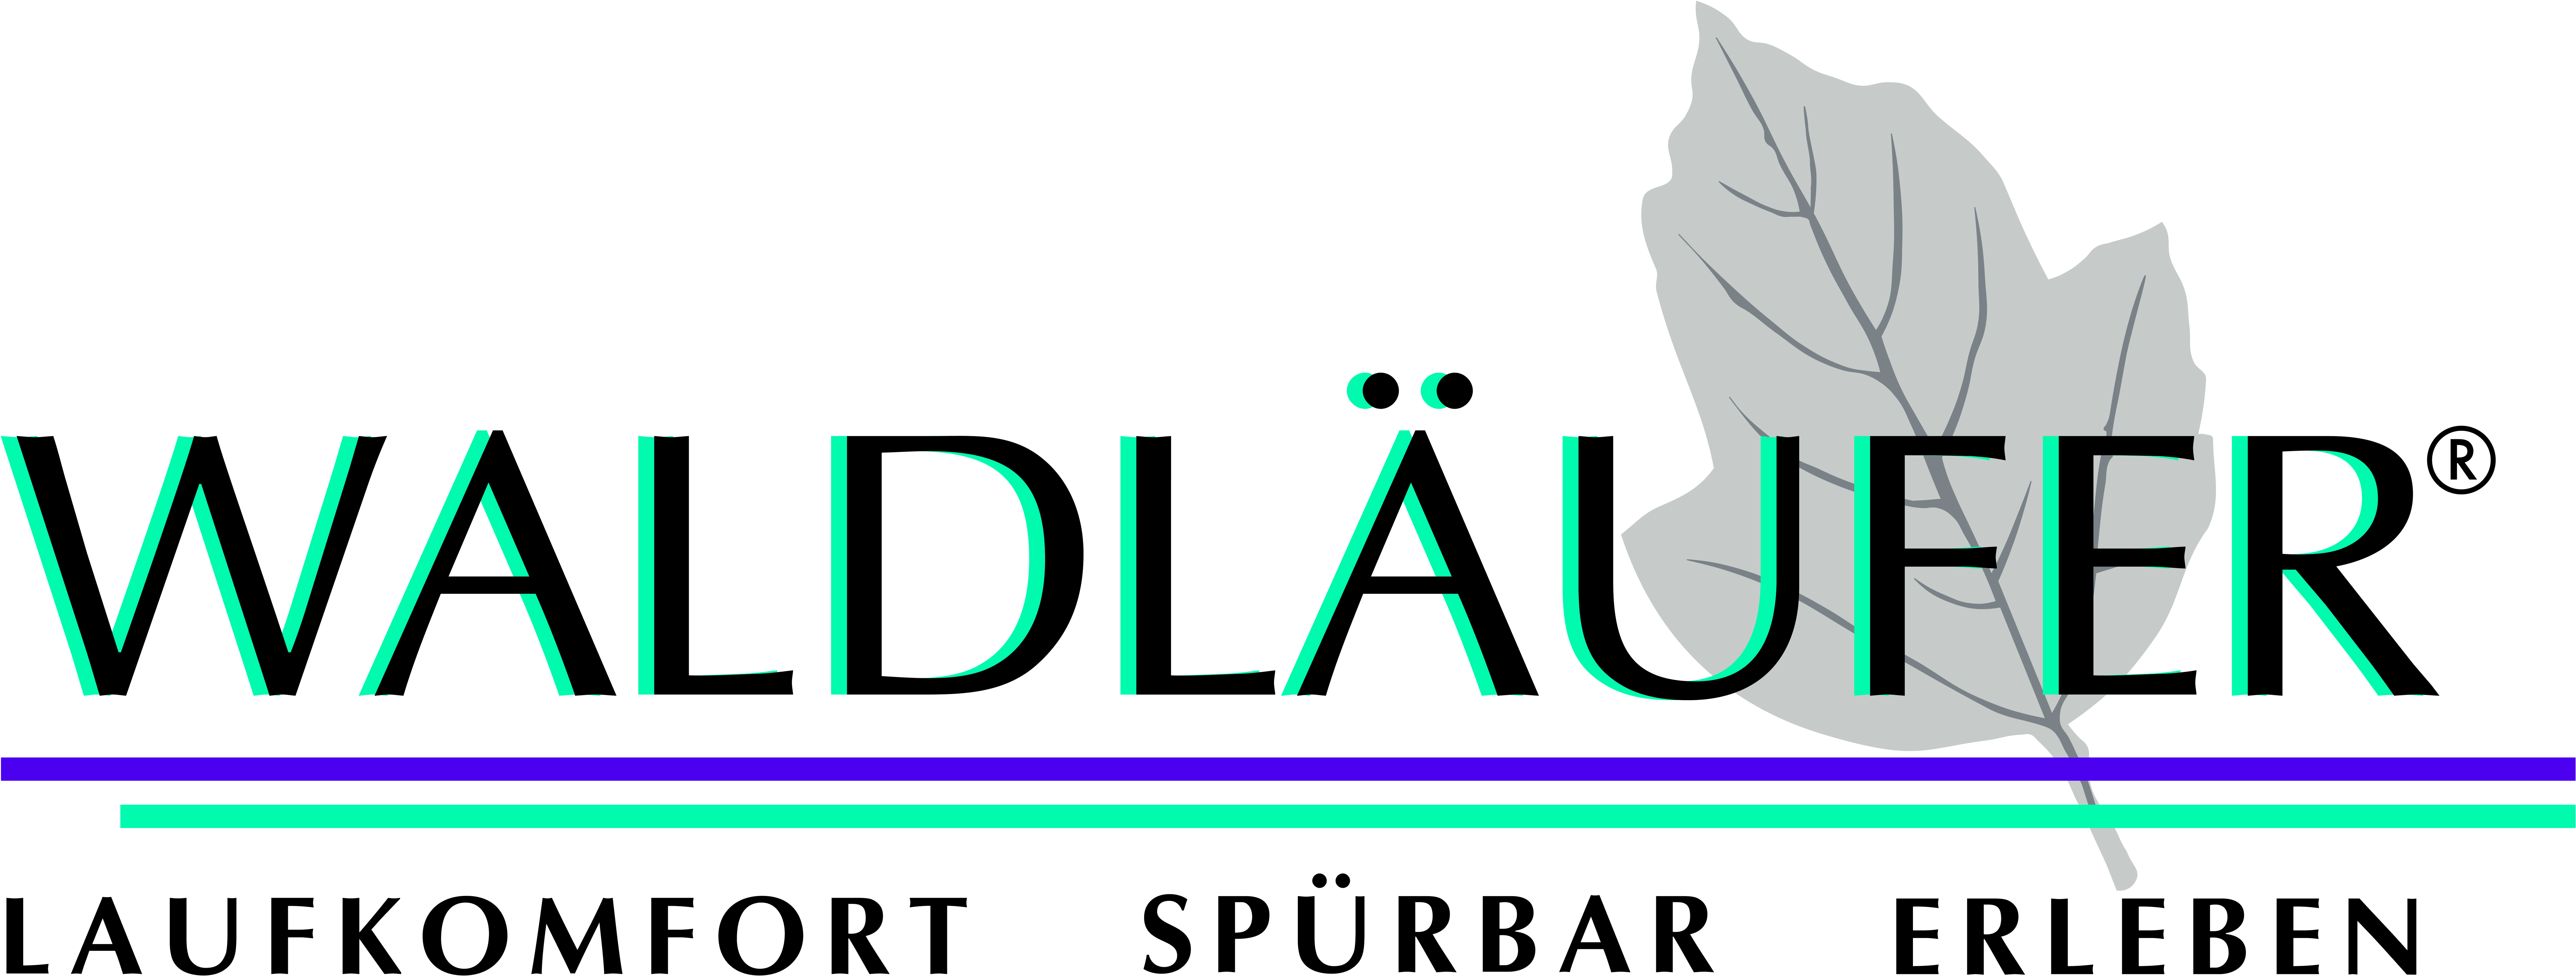 Waldlaeufer_Logo_dt_300DPI_02